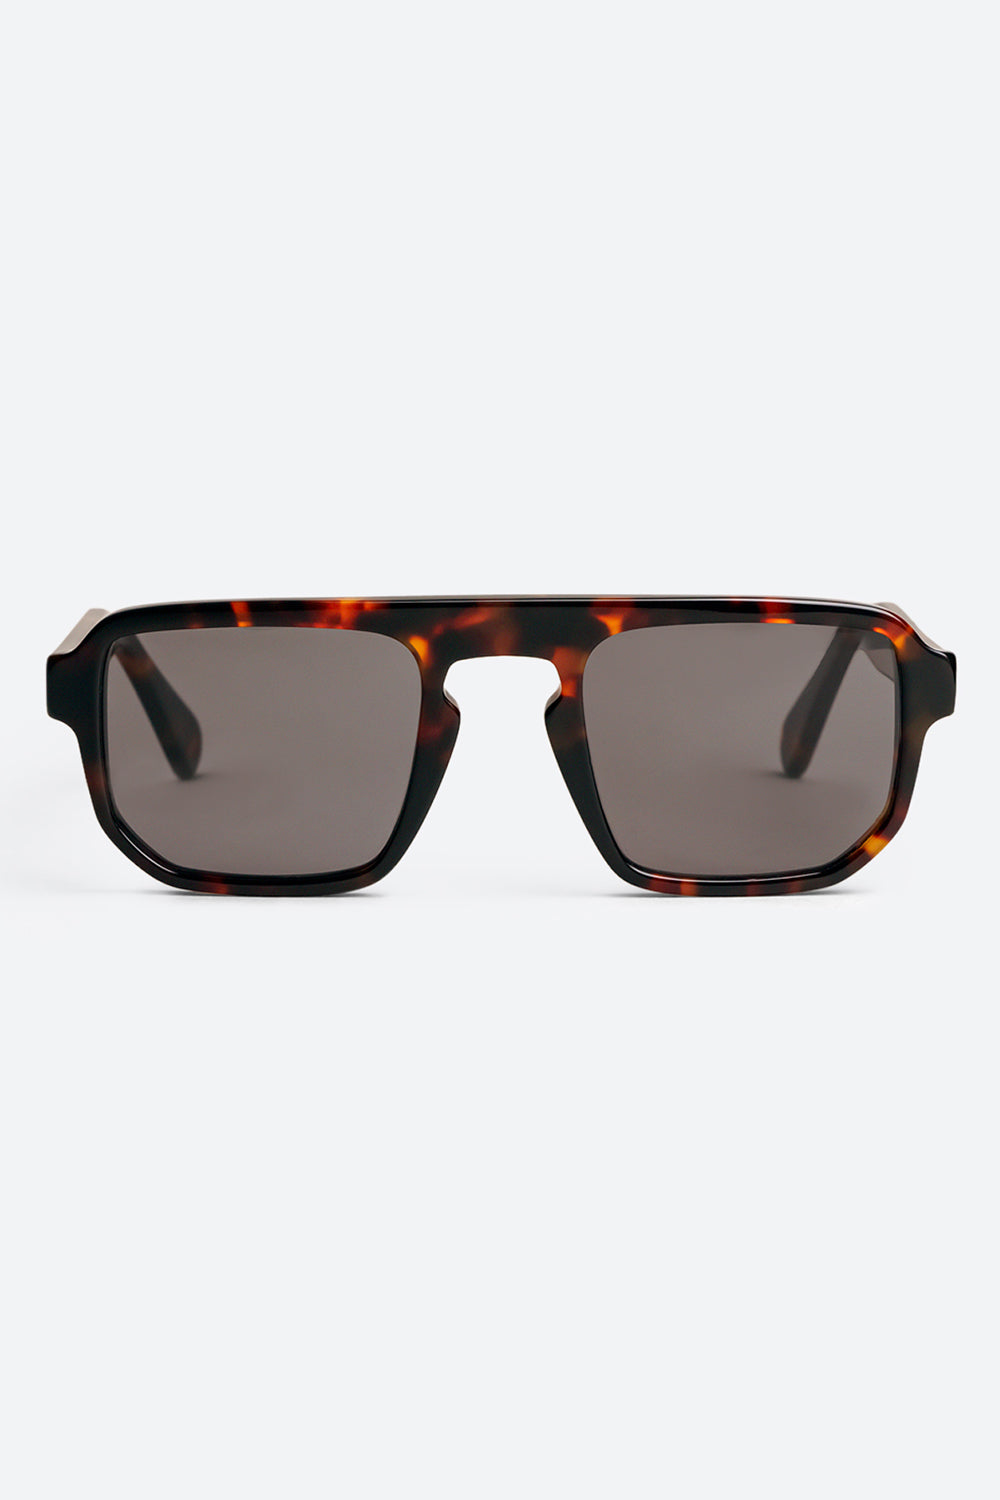 Gaucho Sunglasses in Dark Tortoiseshell